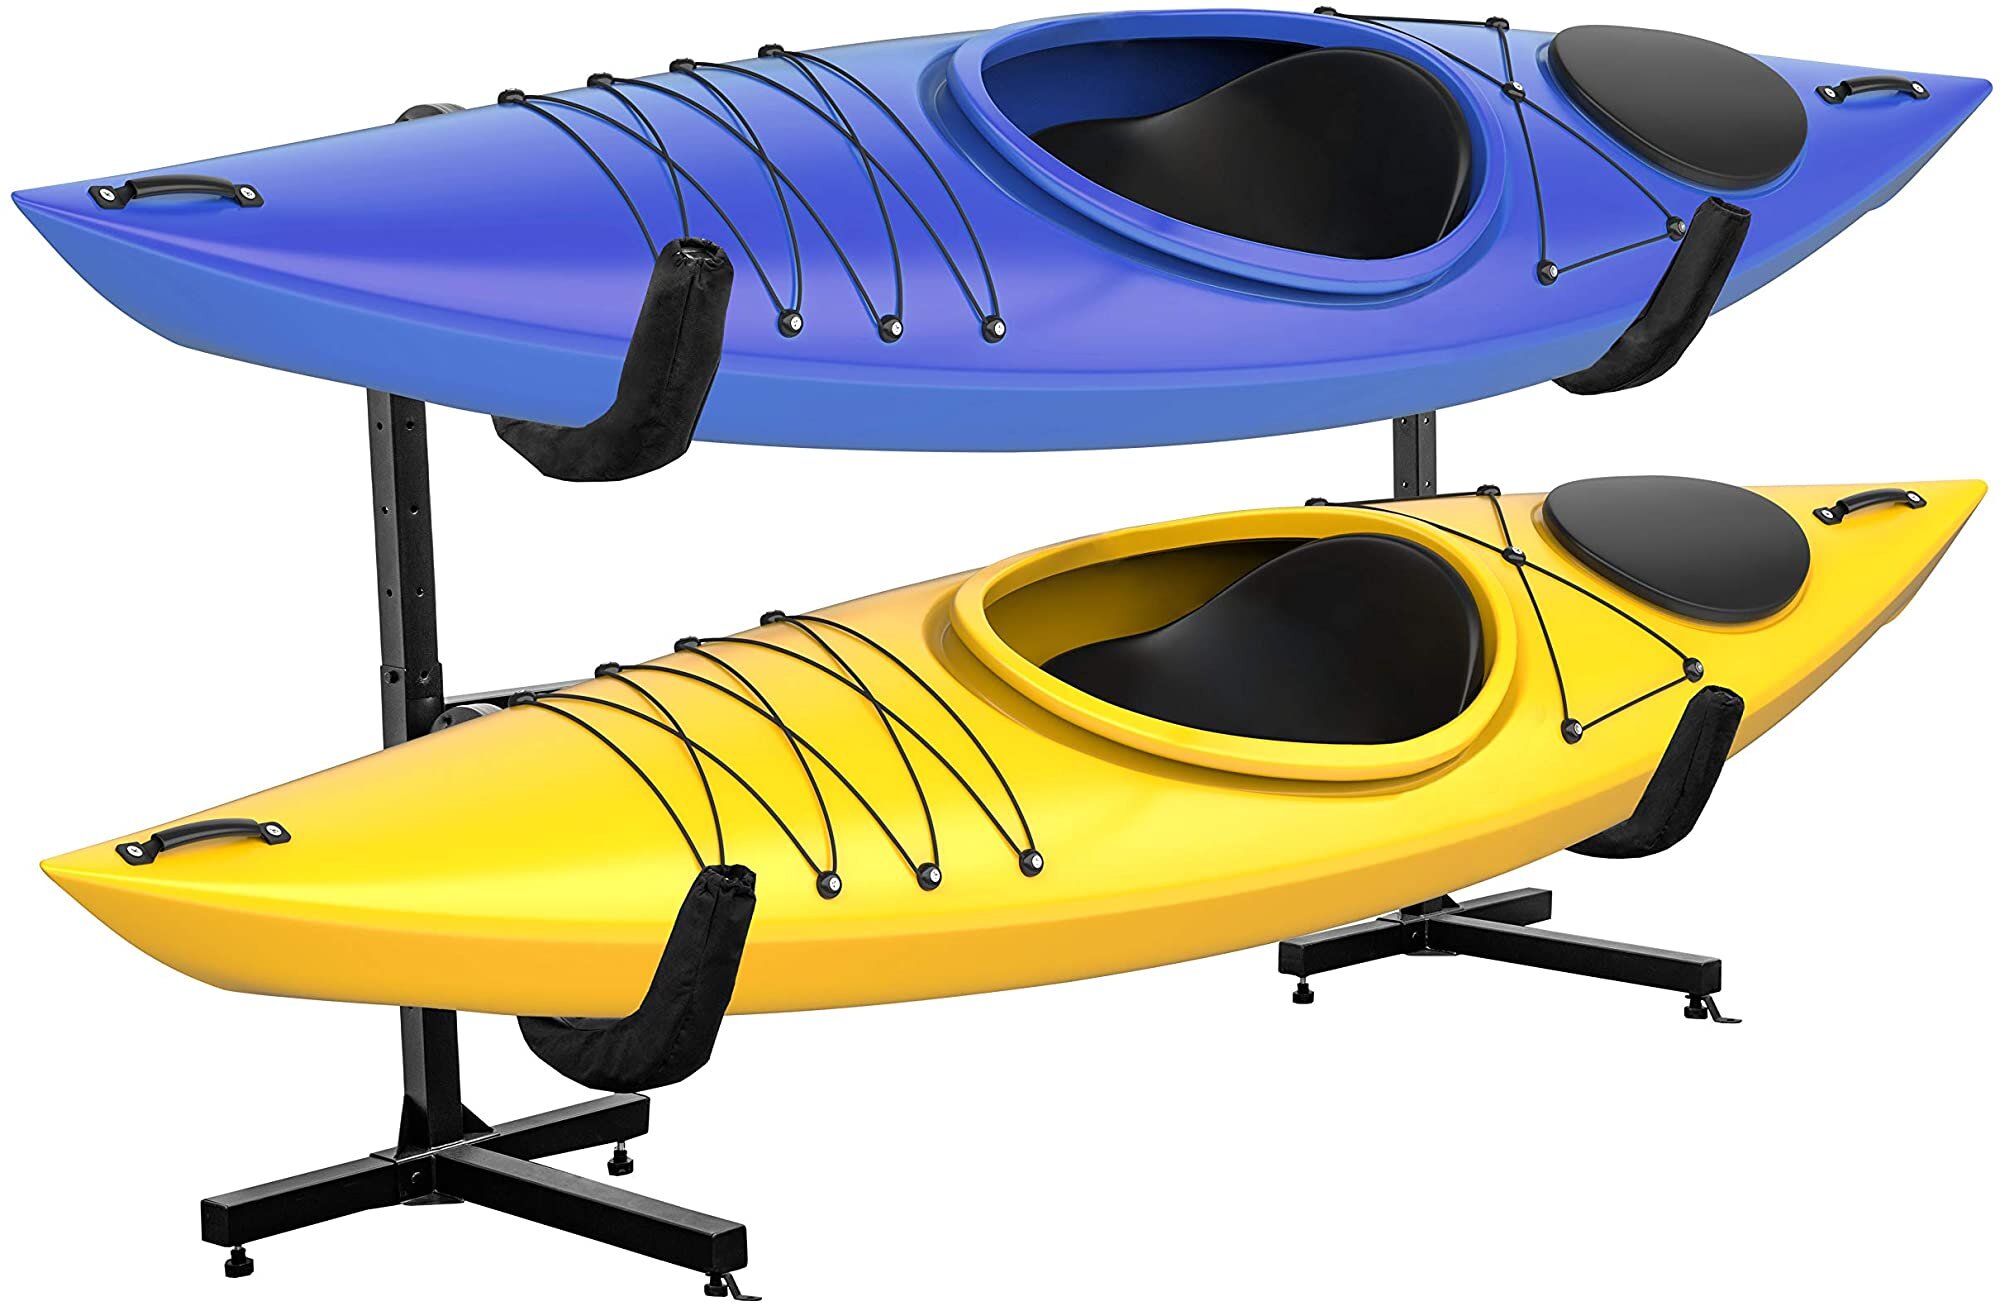 Arlmont & Co. Liev Metal Freestanding Adjustable Kayak Rack & Reviews